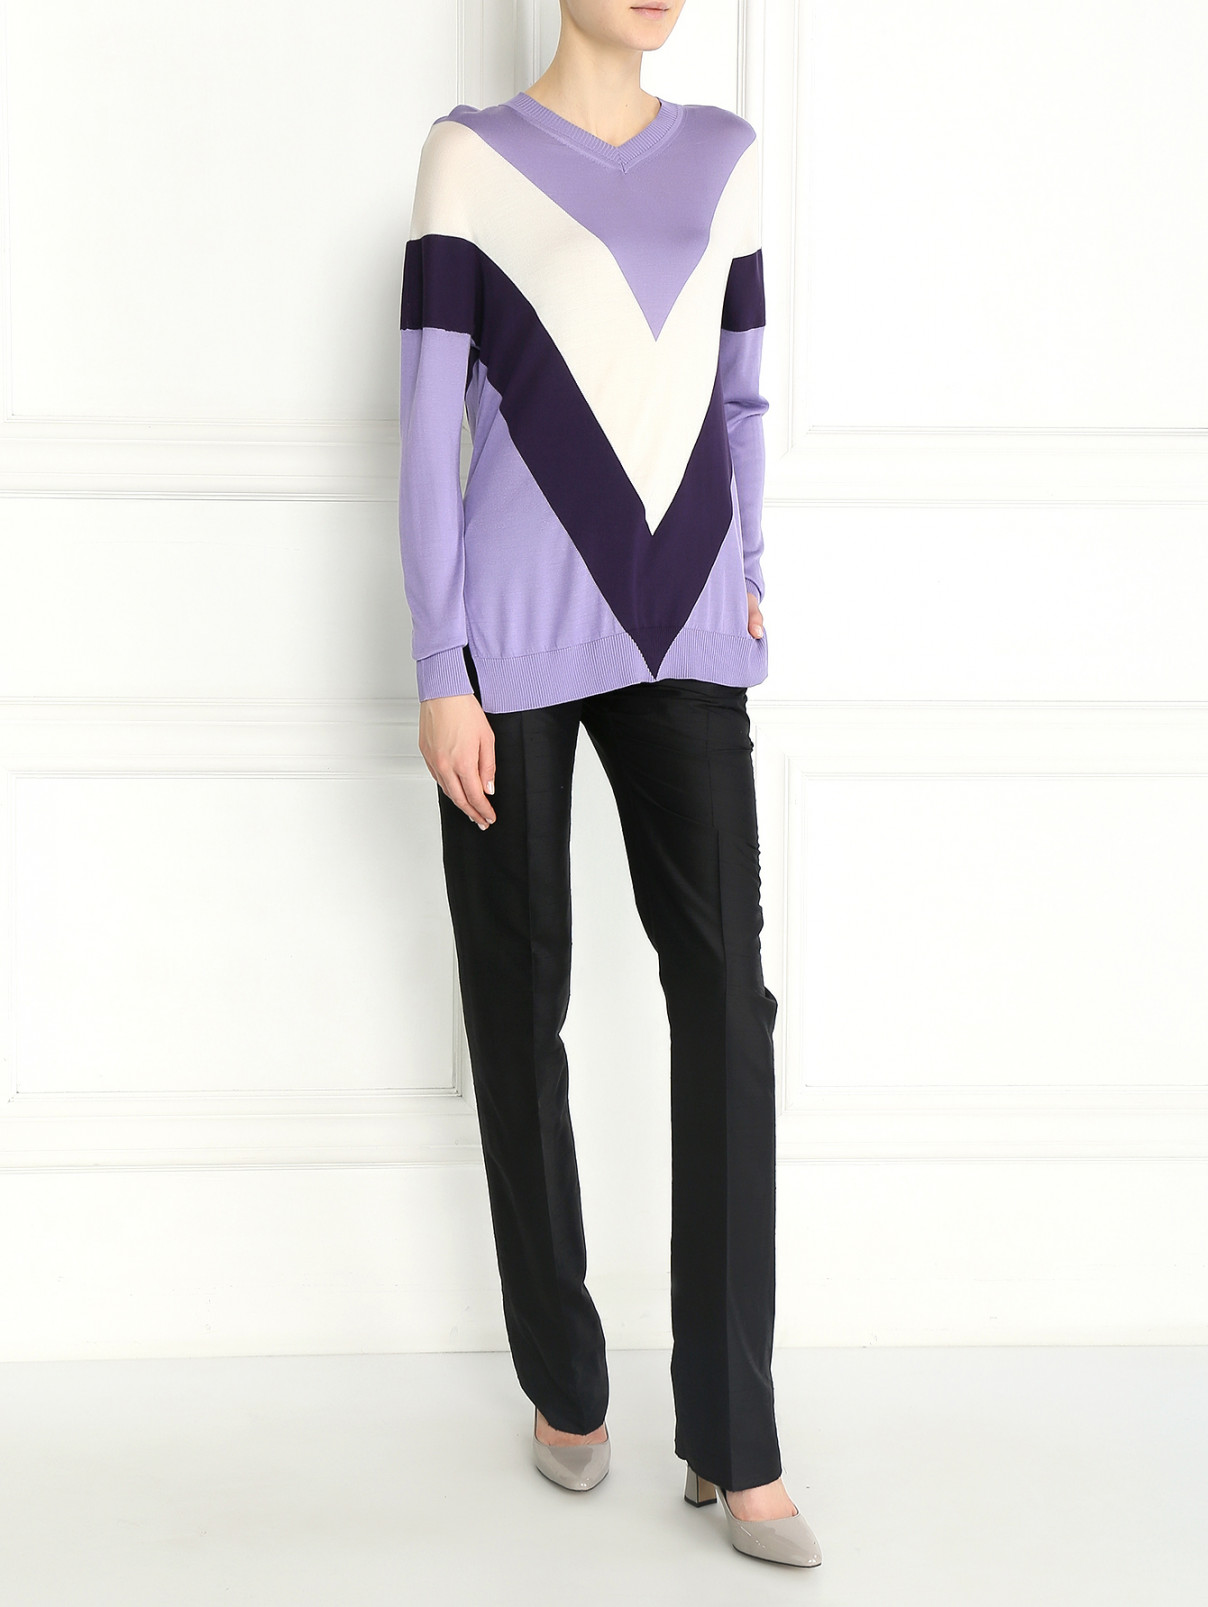 Джемпер из шелка с контрастными вставками Sportmax  –  Модель Общий вид  – Цвет:  Фиолетовый